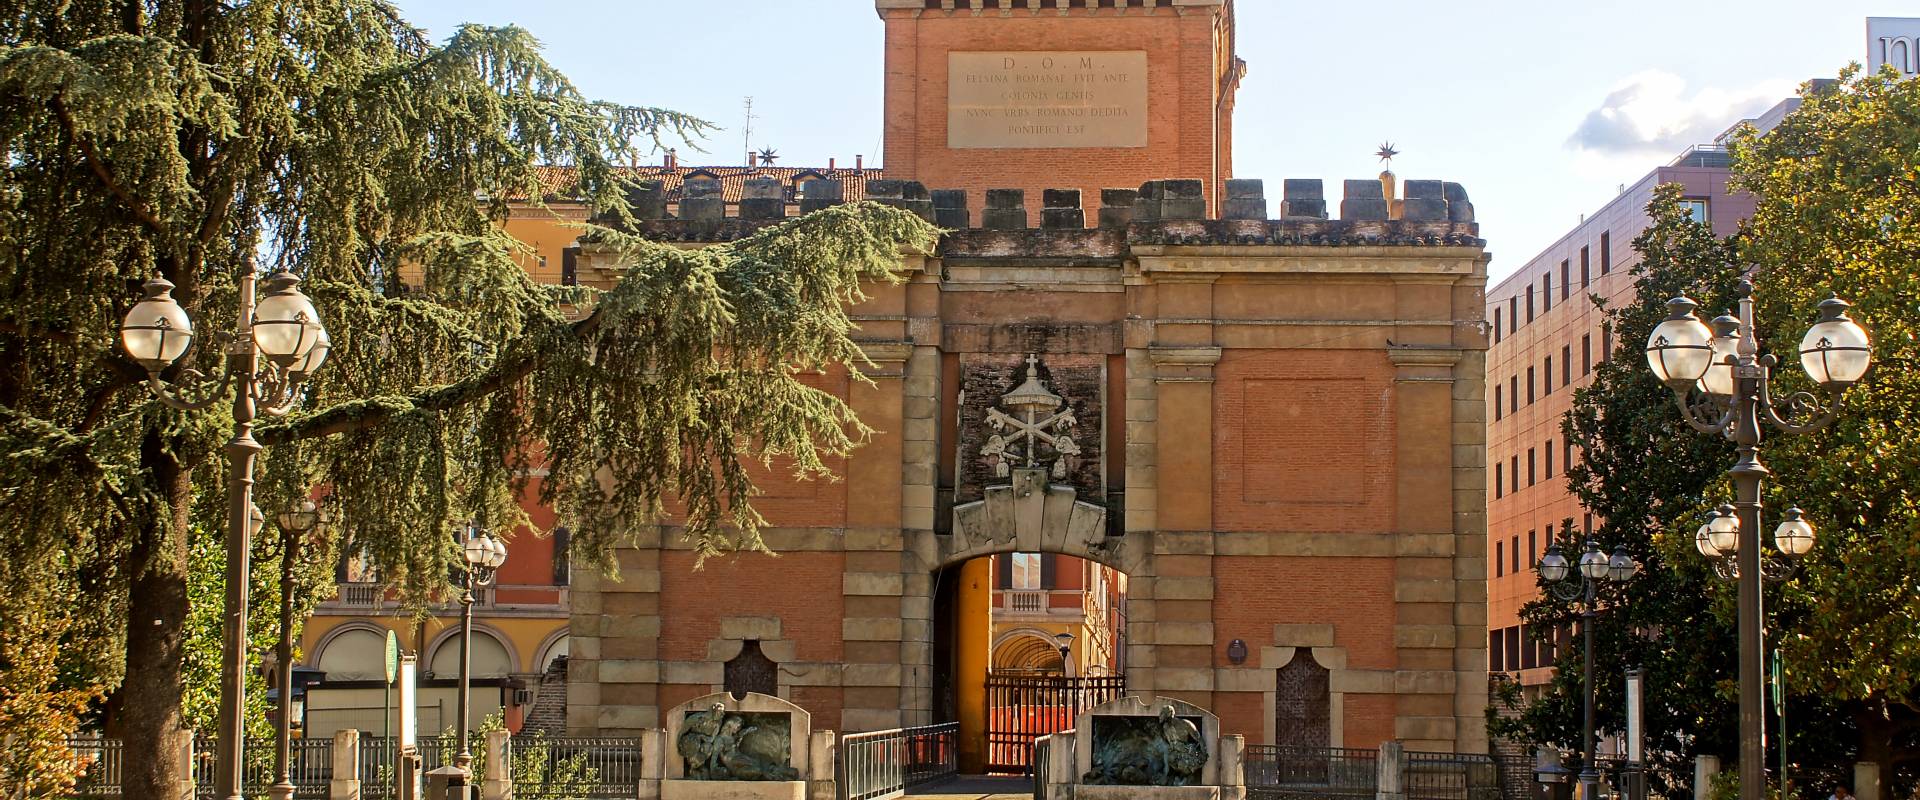 Porta Galliera, Bologna foto di Alessandro Siani